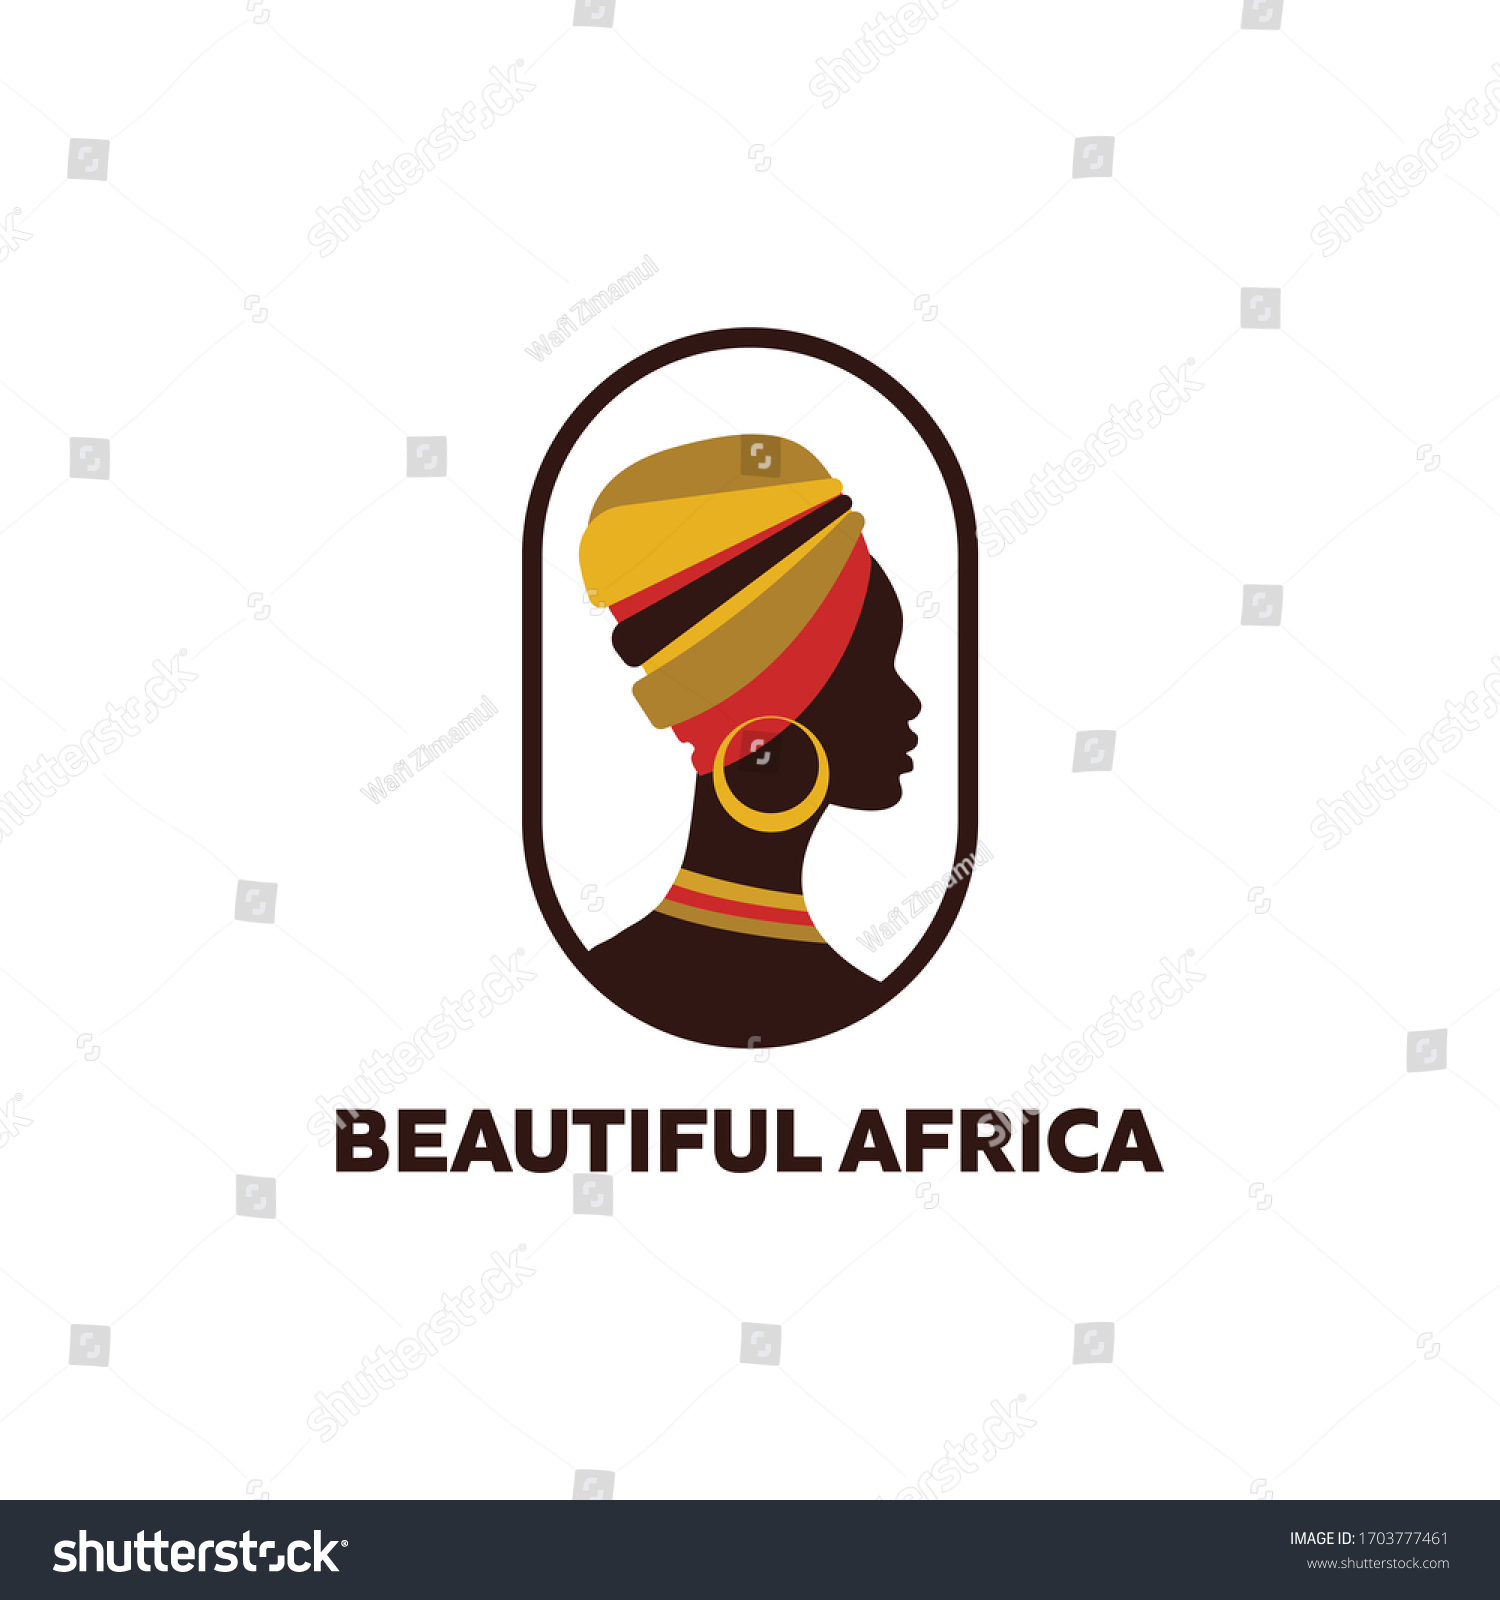 7,716 African woman logo Stock Vectors, Images & Vector Art | Shutterstock